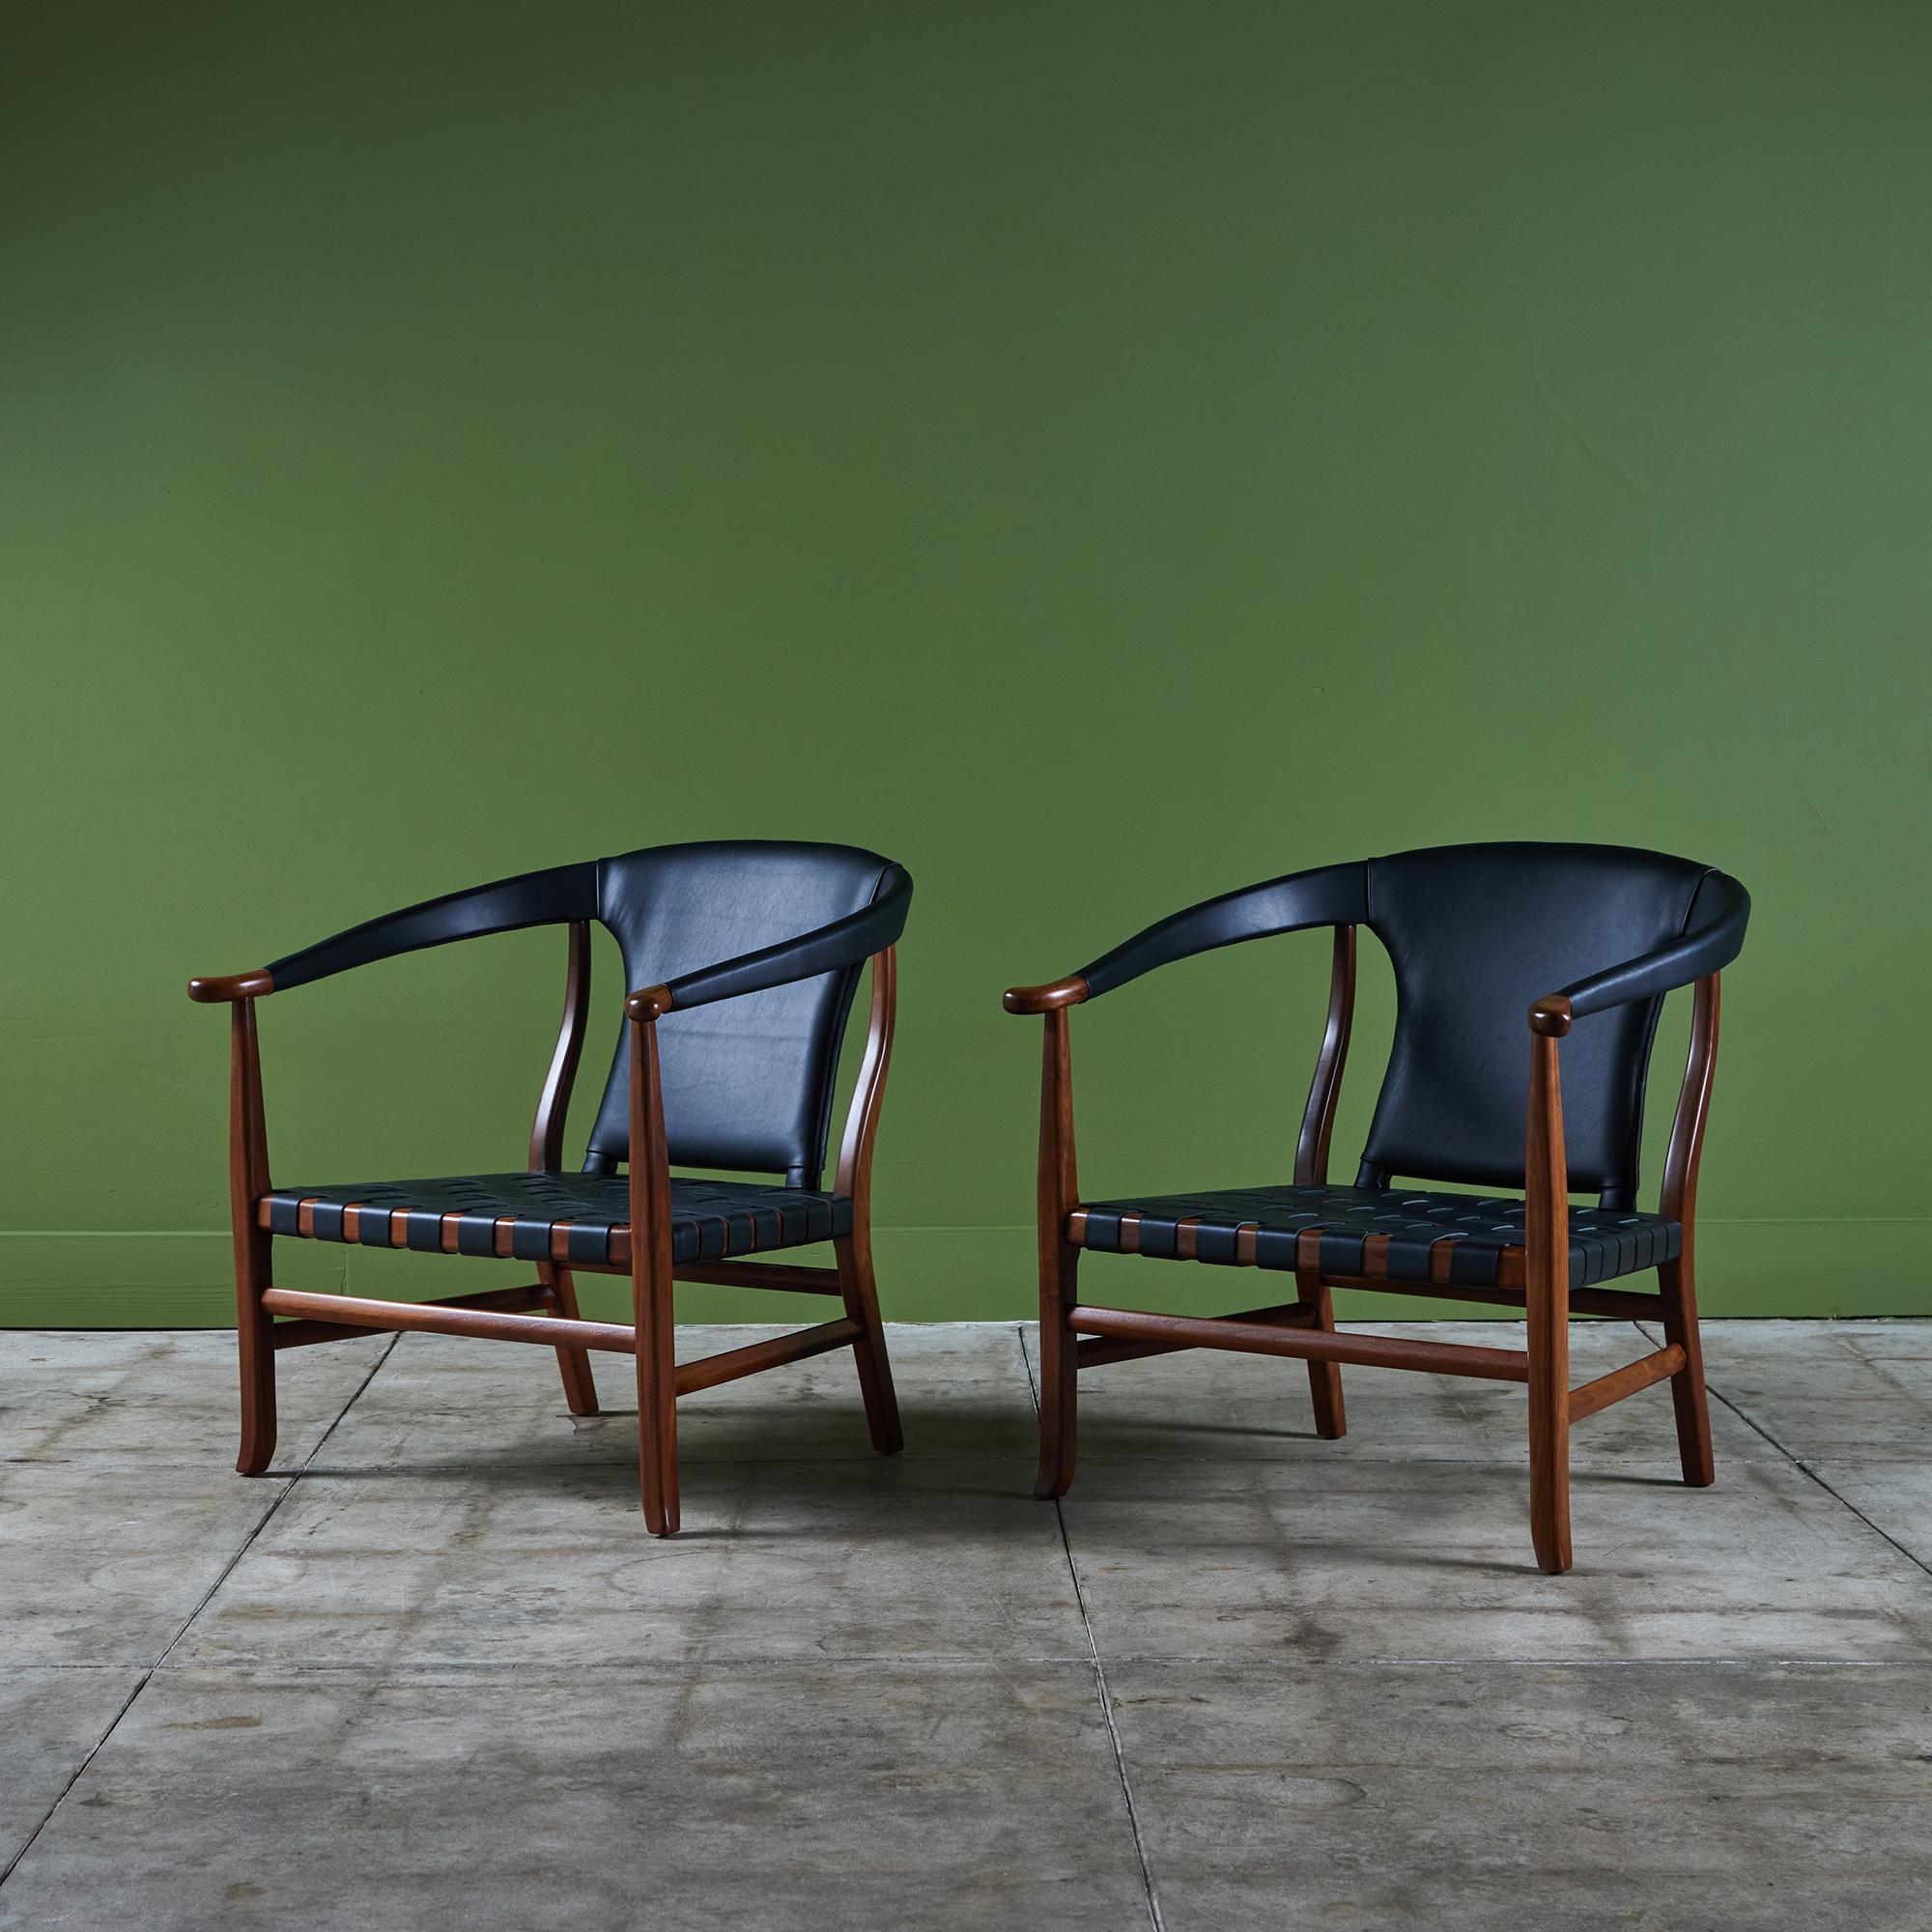 Paire de chaises longues pour Glenn of California, c.C., années 1960. Ces fauteuils ont une structure en noyer richement teinté, des sièges en cuir noir tressé et des accoudoirs et dossiers enveloppés de cuir noir.

Dimensionsu2028
28,5